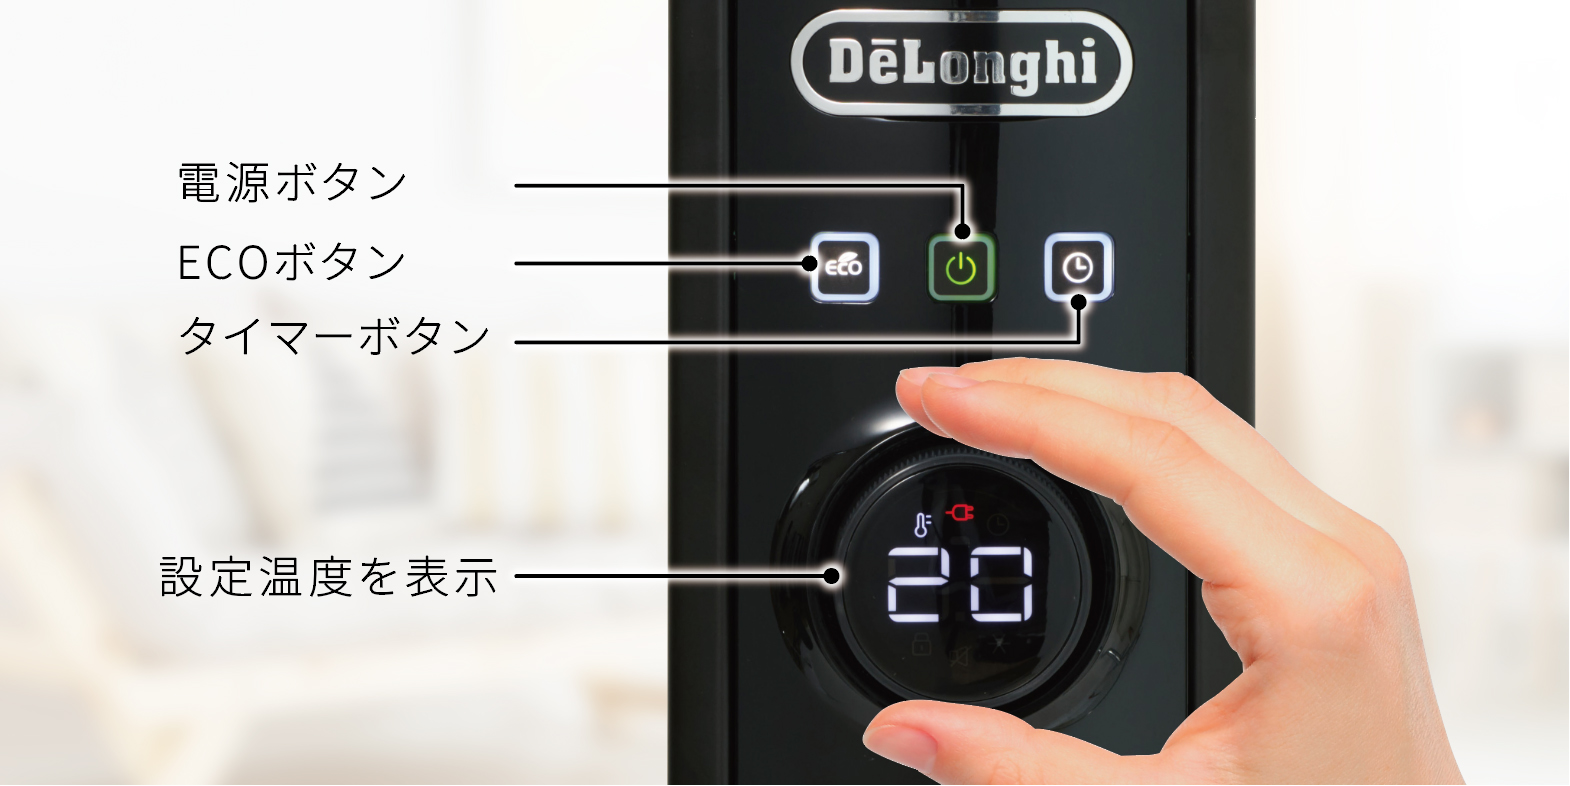 デロンギ(DeLonghi)マルチダイナミックヒーター ゼロ風暖房 Wi-Fiモデル iOS Android スマートスピーカー対応 10~ - 2